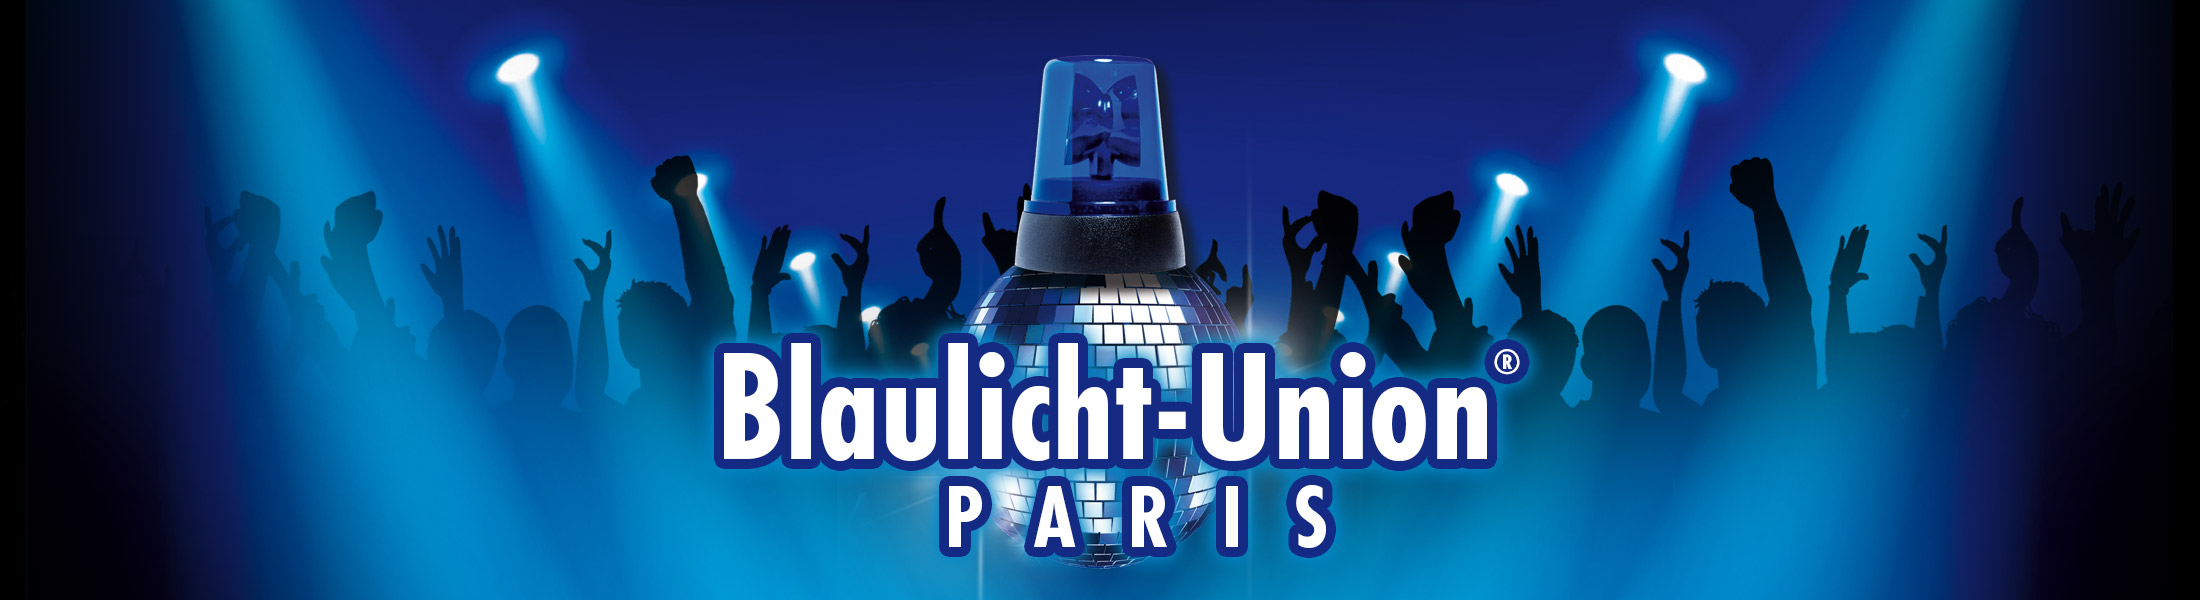 Blaulicht Union Party® Paris